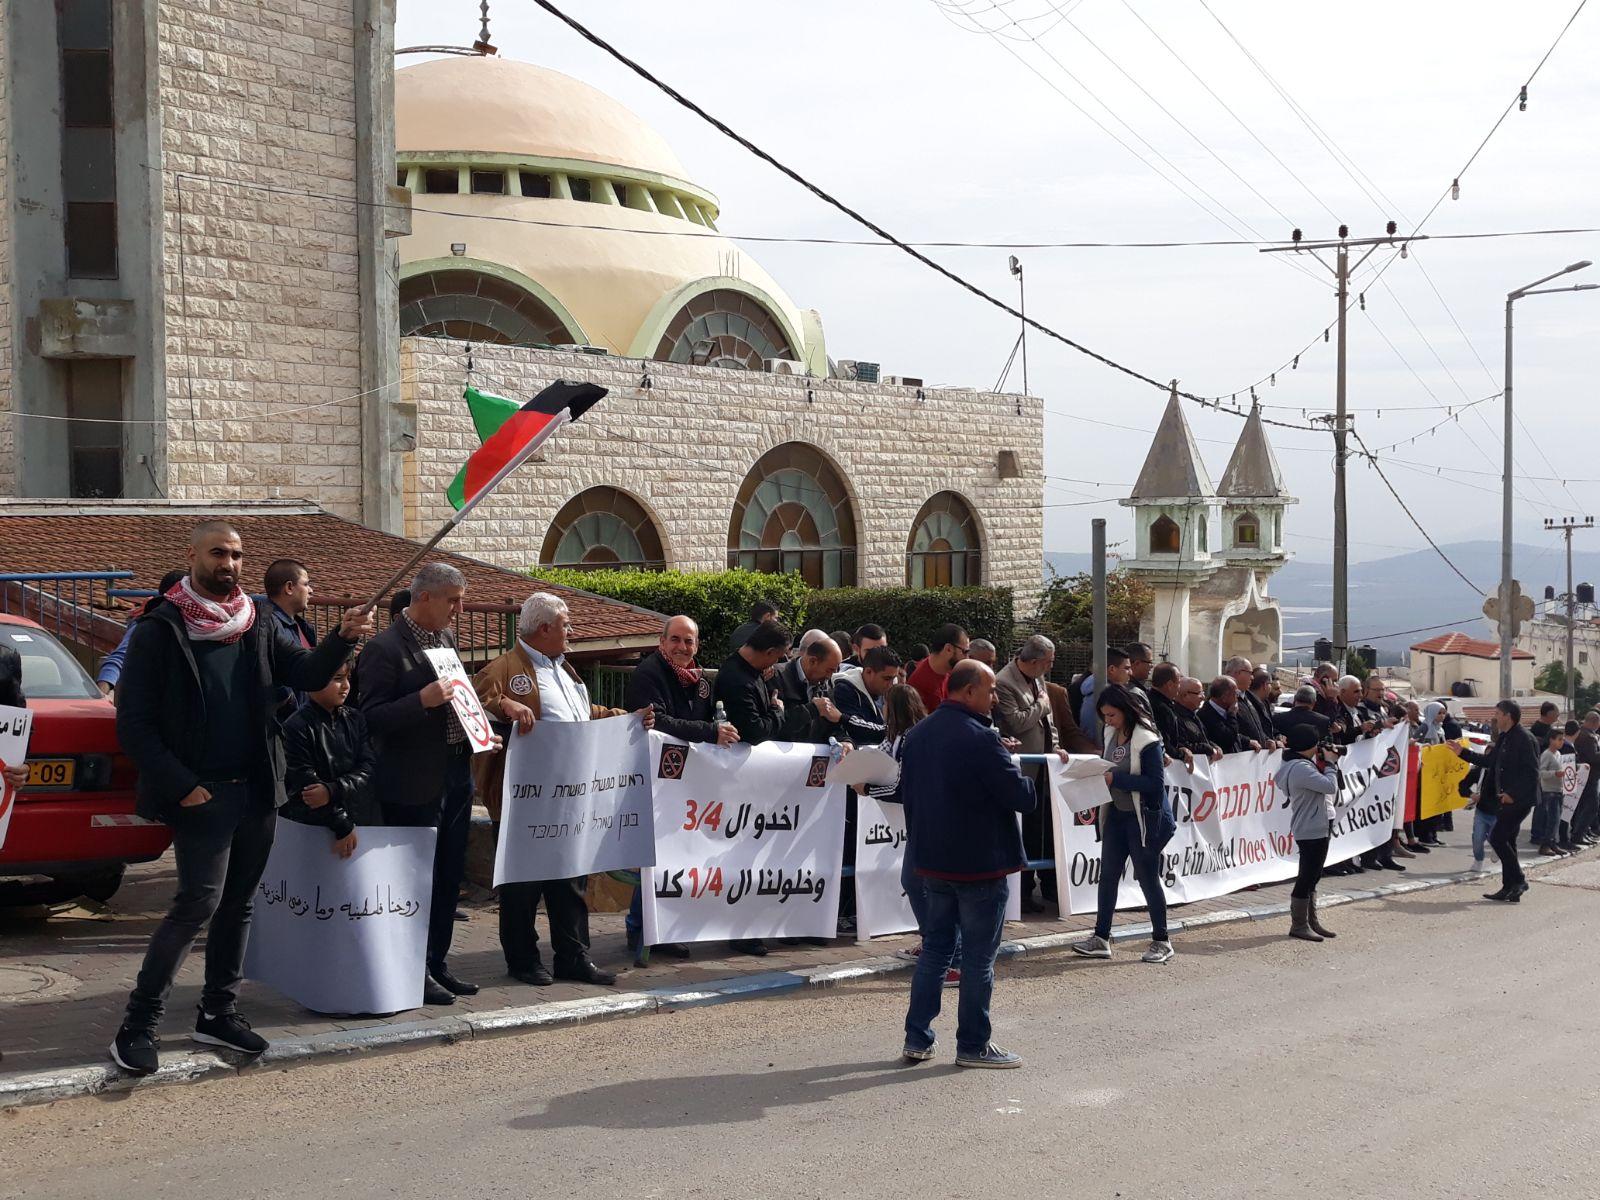  بركة: يتحتّم على فلسطينيي الداخل استقبال نتنياهو   بالصرامي على وجهه   2017122812295511